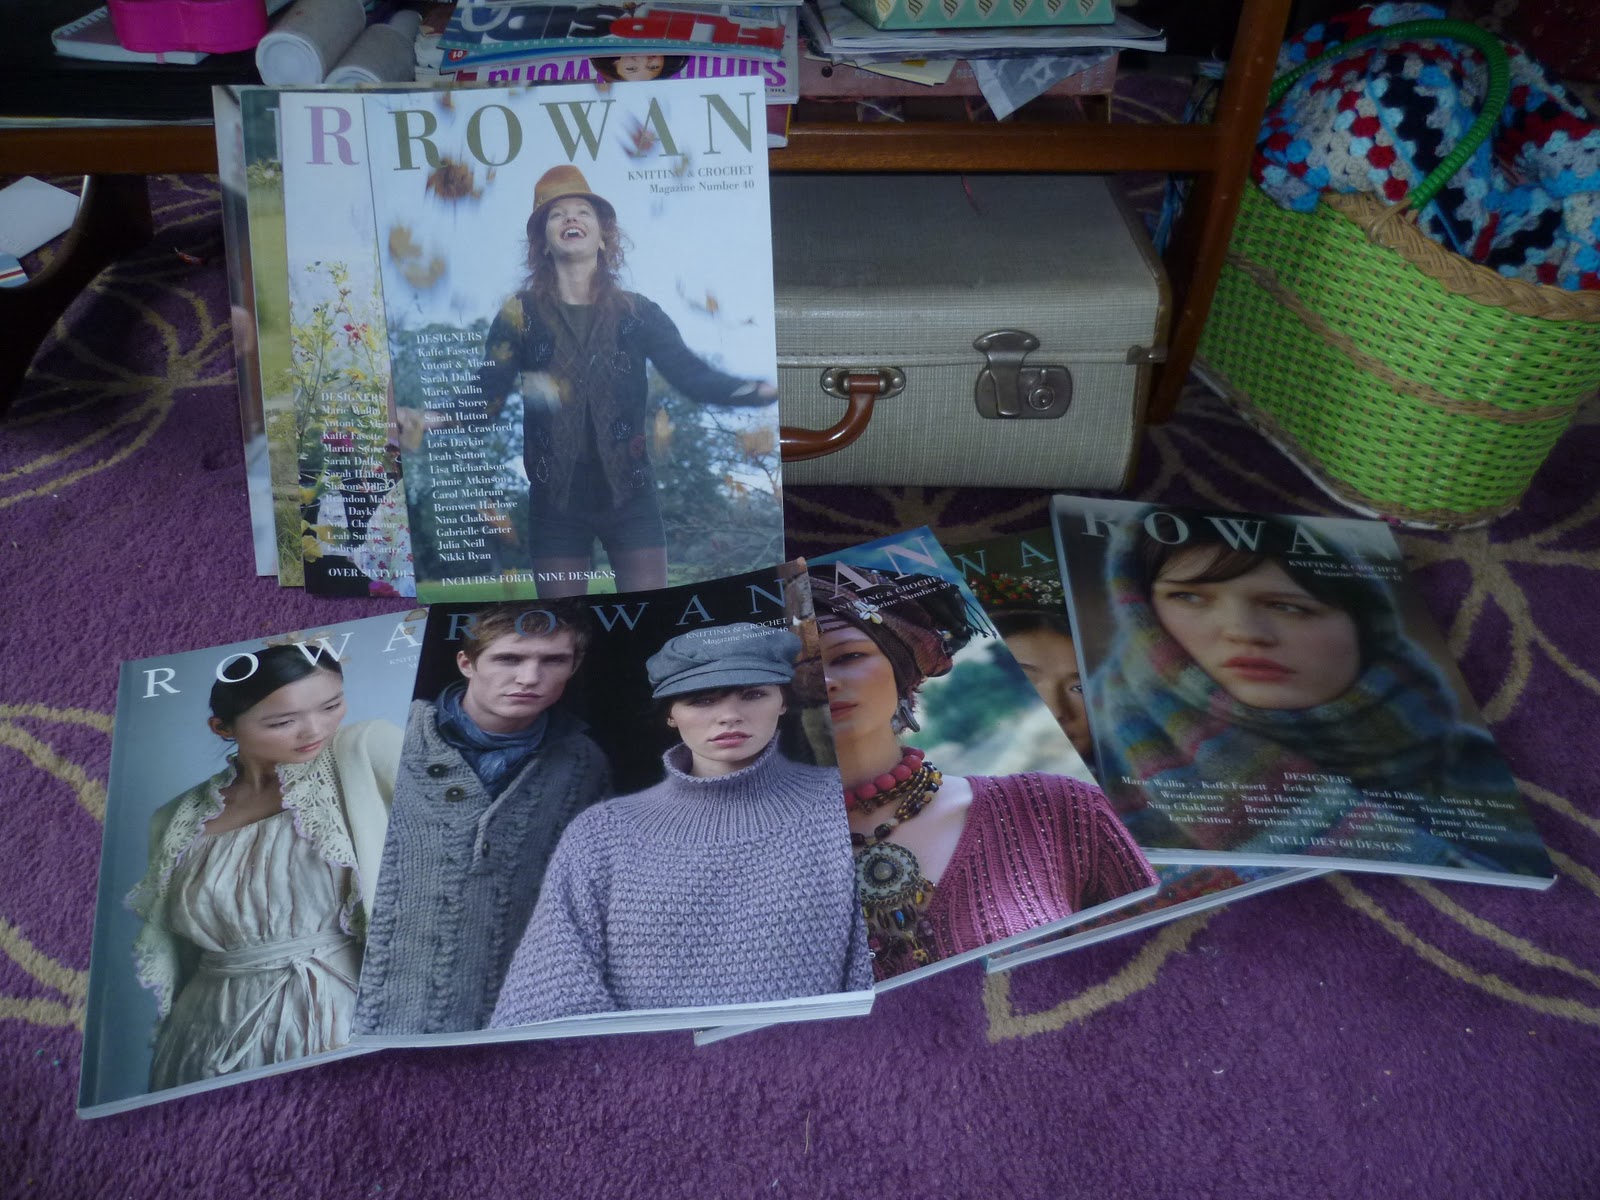 knitting magazine 99p